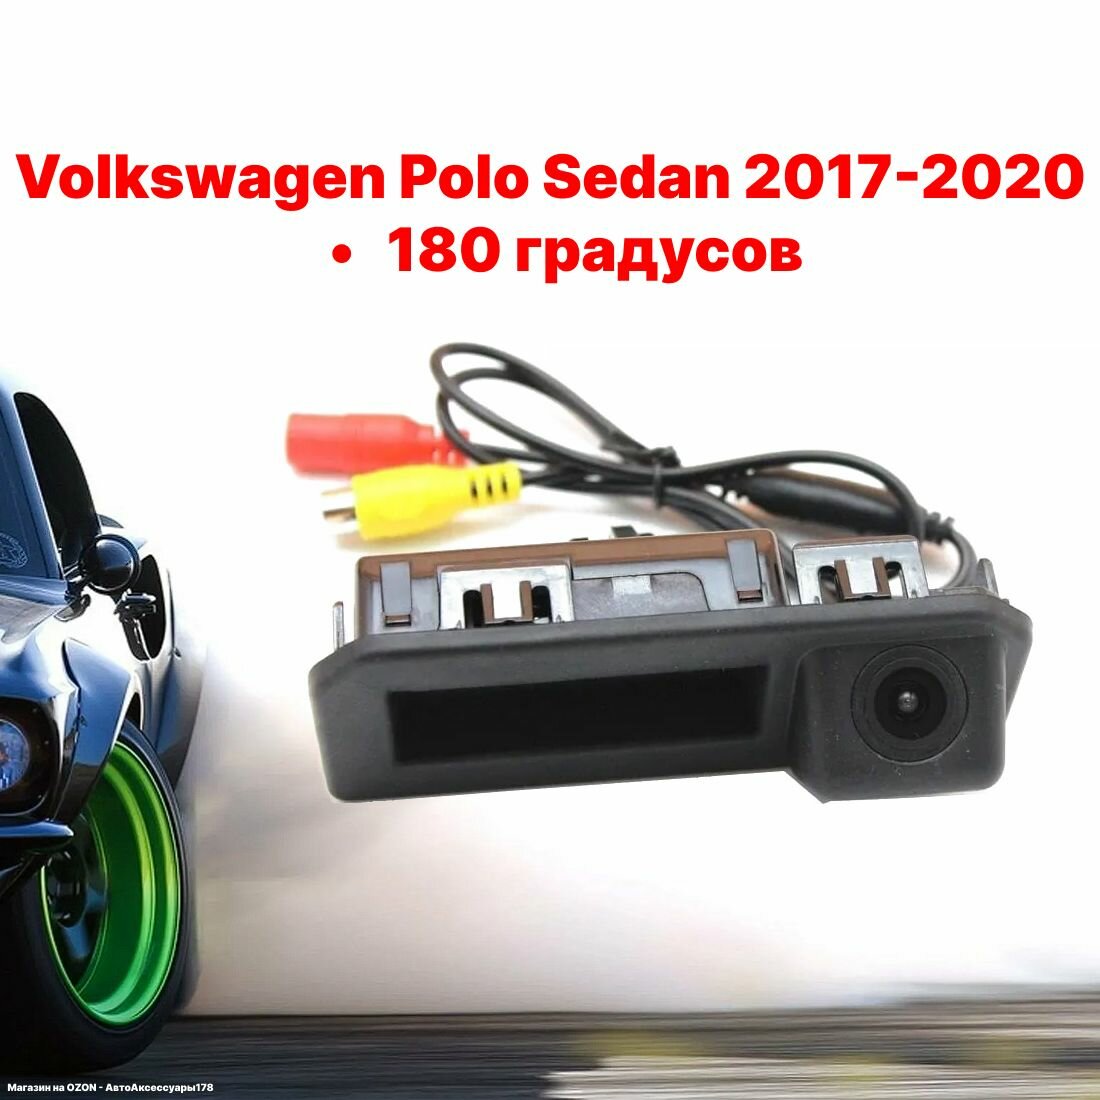 Камера заднего вида Фольксваген Поло Седан - 180 градусов (Volkswagen Polo Sedan 2017-2020) в ручку багажника